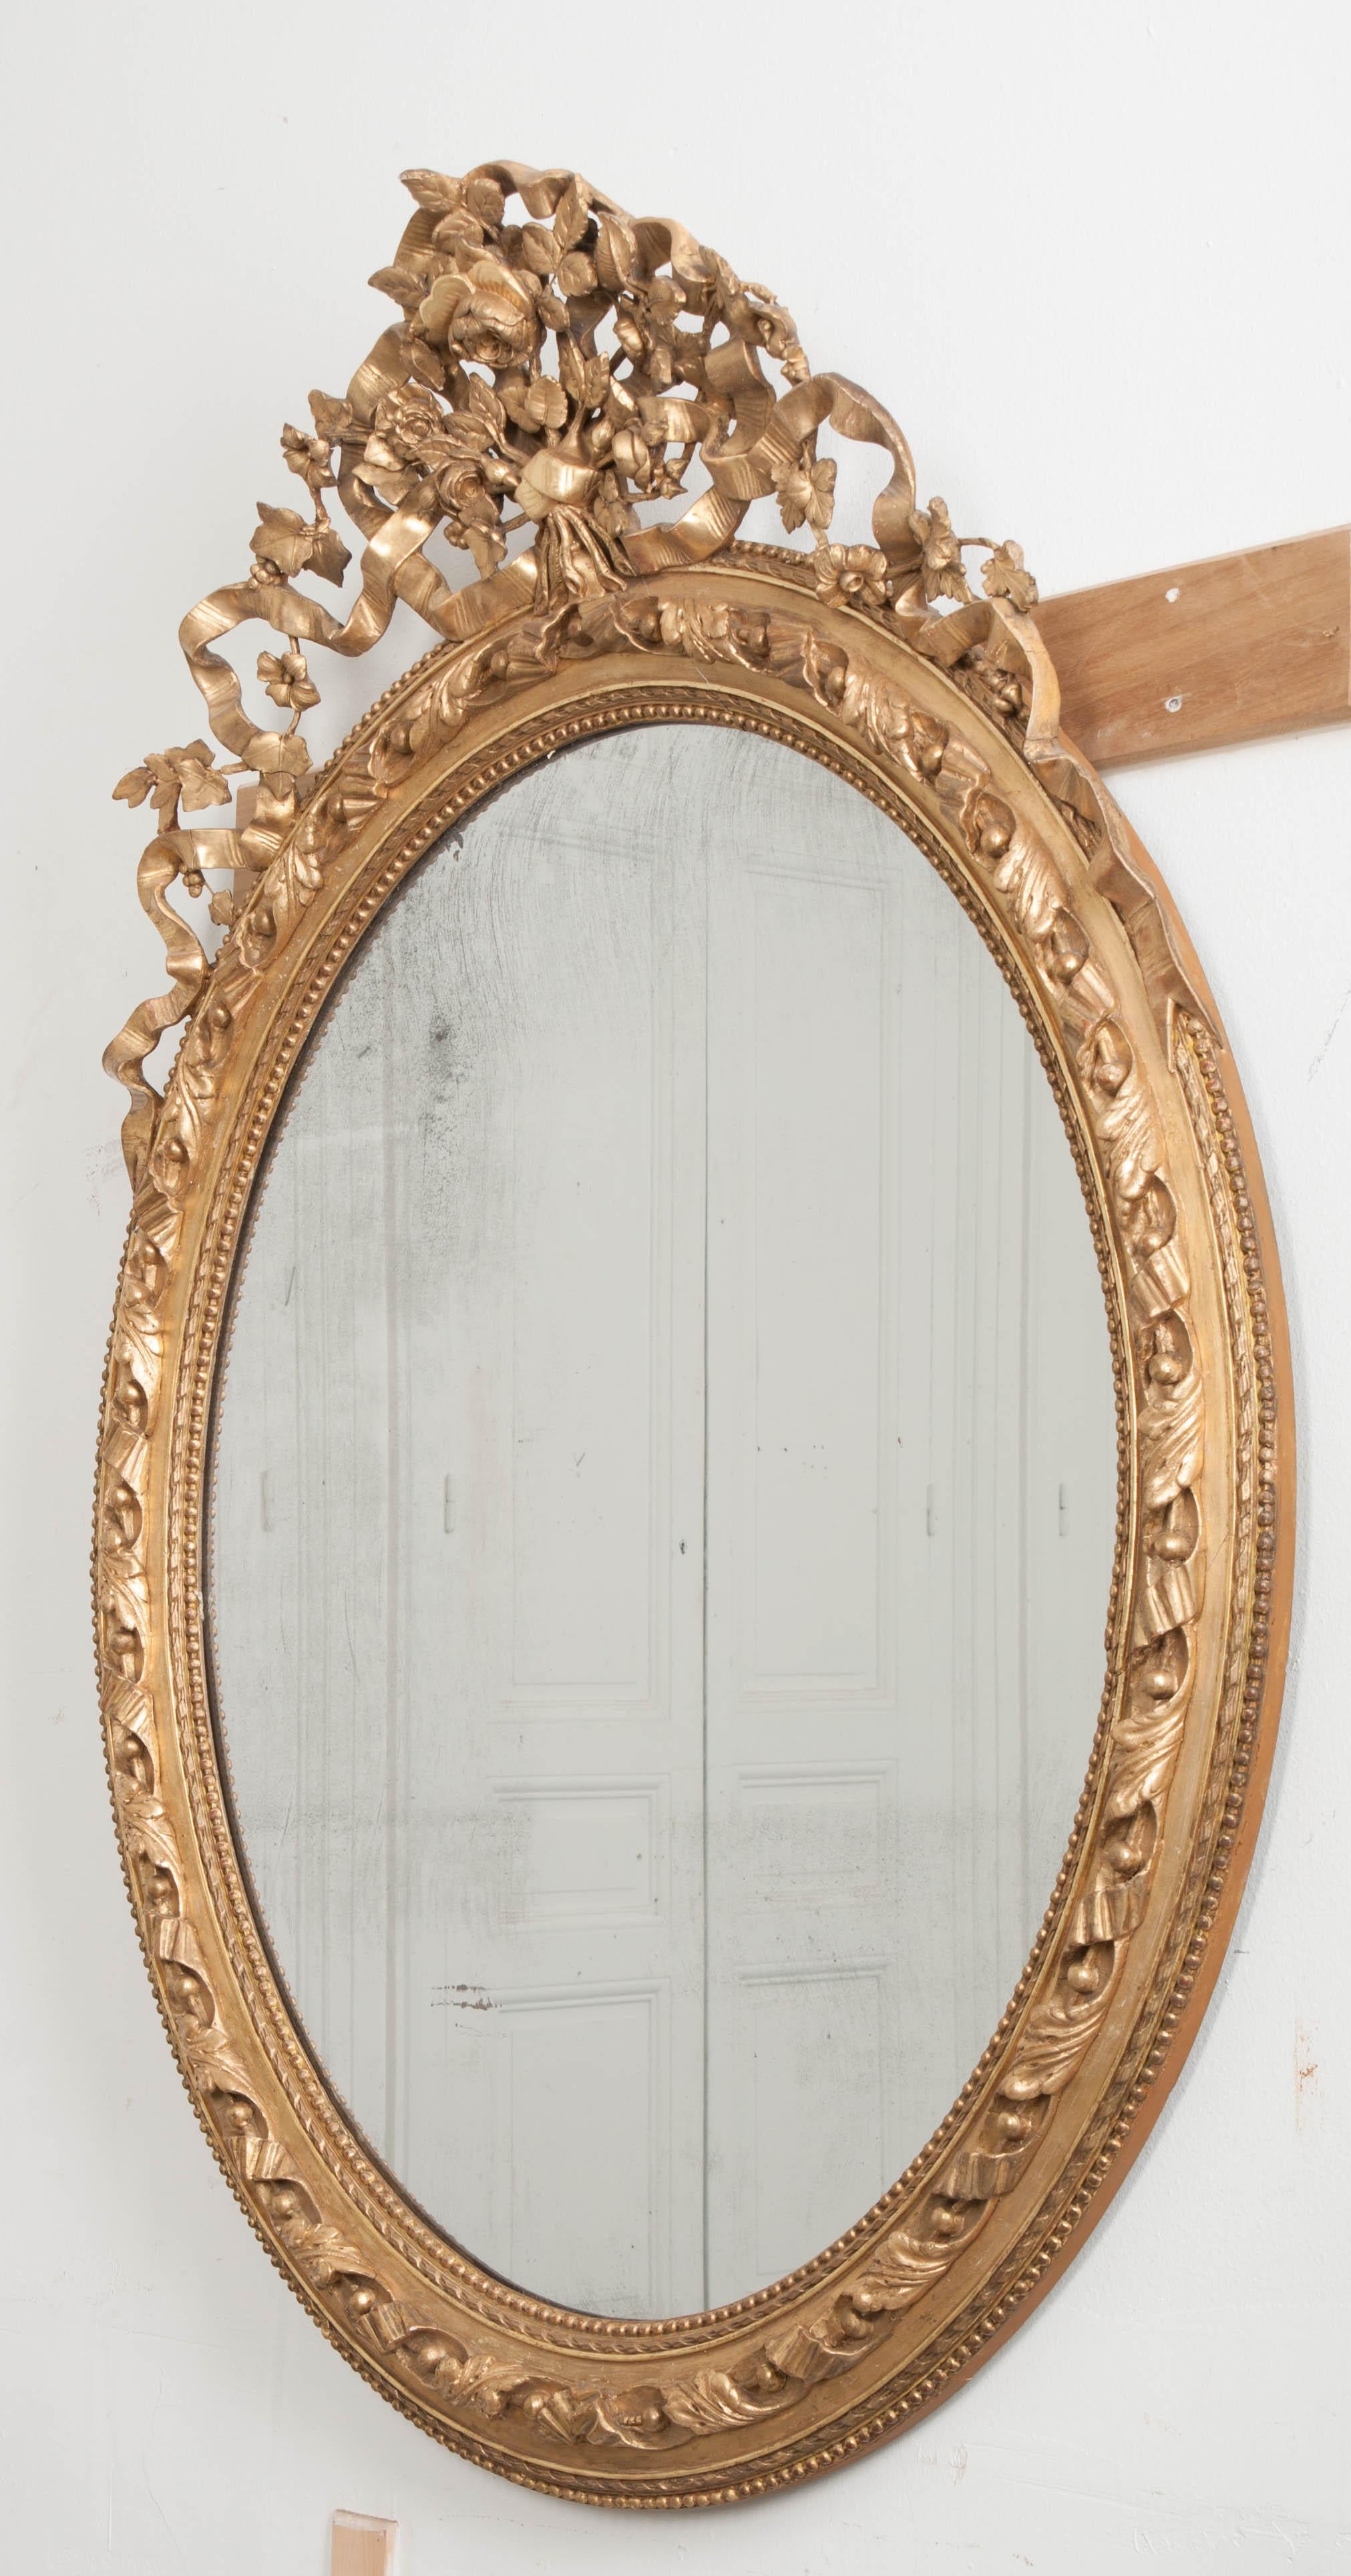 Dieser ovale, vergoldete Spiegel im französischen Louis-XVI-Stil aus dem 19. Jahrhundert ist fantasievoll und unterhaltsam und weist von oben bis unten komplizierte, geschnitzte Details auf. Ein geschnitztes Blumen- und Rankenbouquet krönt den